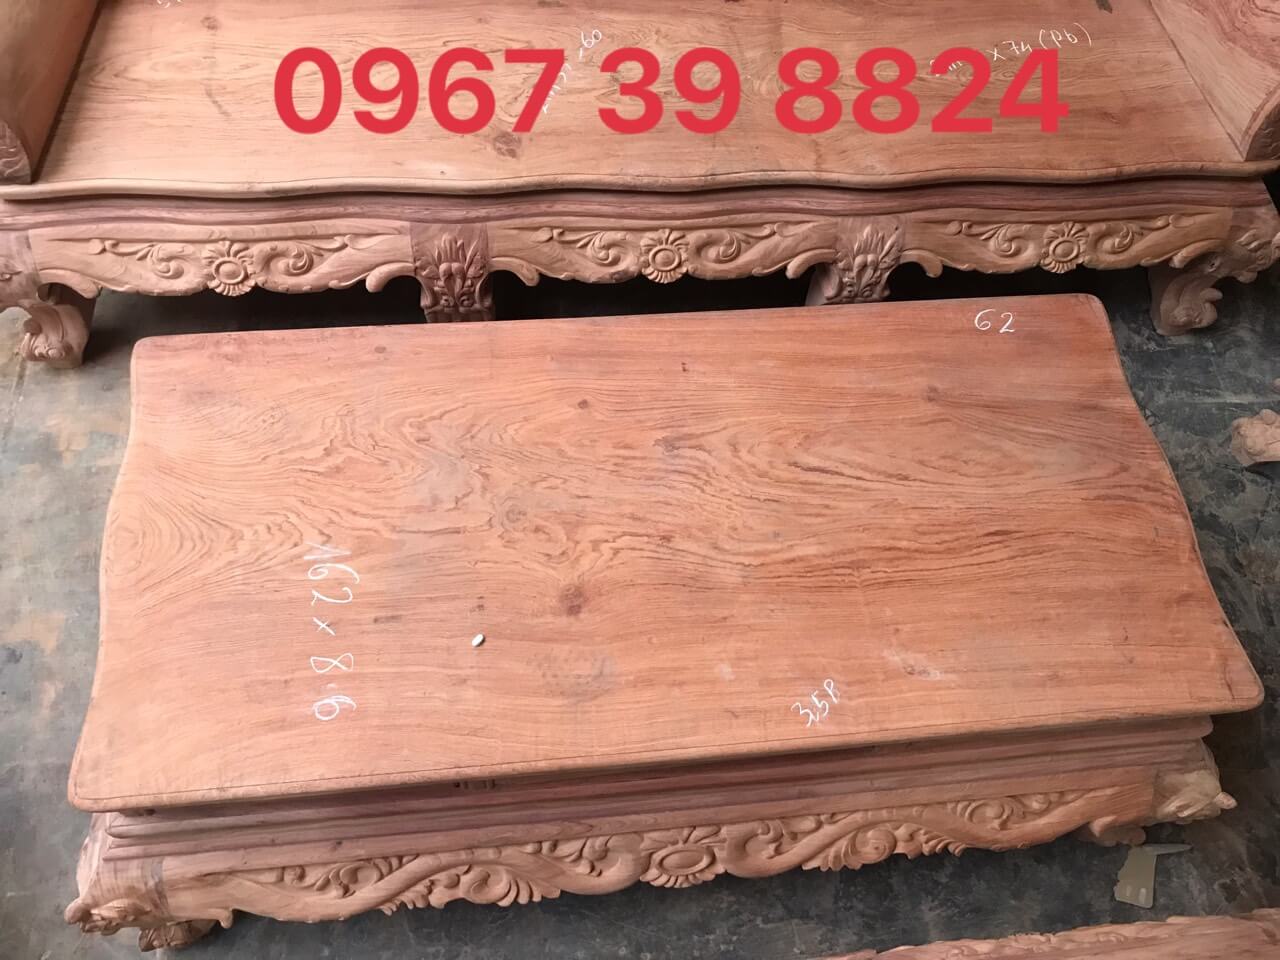 bộ bàn ghế hoàng gia gỗ hương